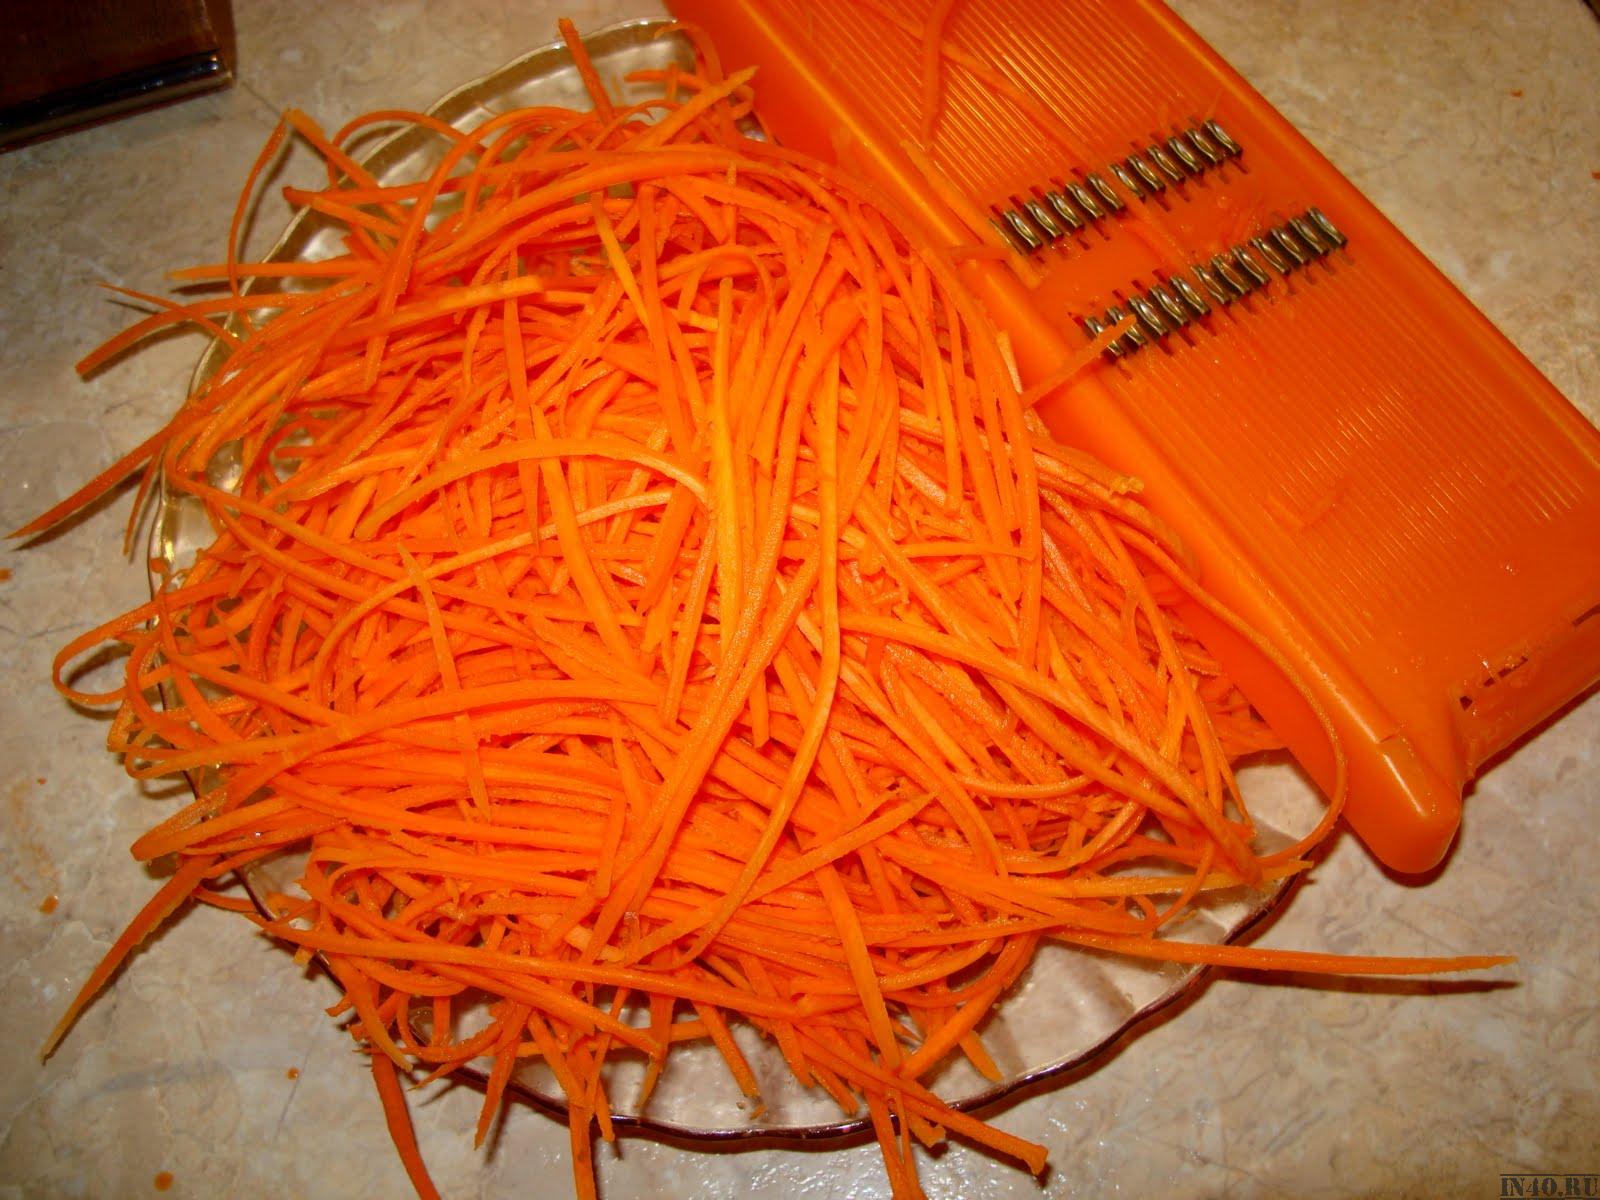 С моркови снимите верхний слой, натрите на специальной терке с насадкой для приготовления овощей по-корейски. При отсутствии данной терки можно воспользоваться обычной, но с крупными отверстиями. Стружку моркови закиньте на масляную сковороду, пассеруйте 